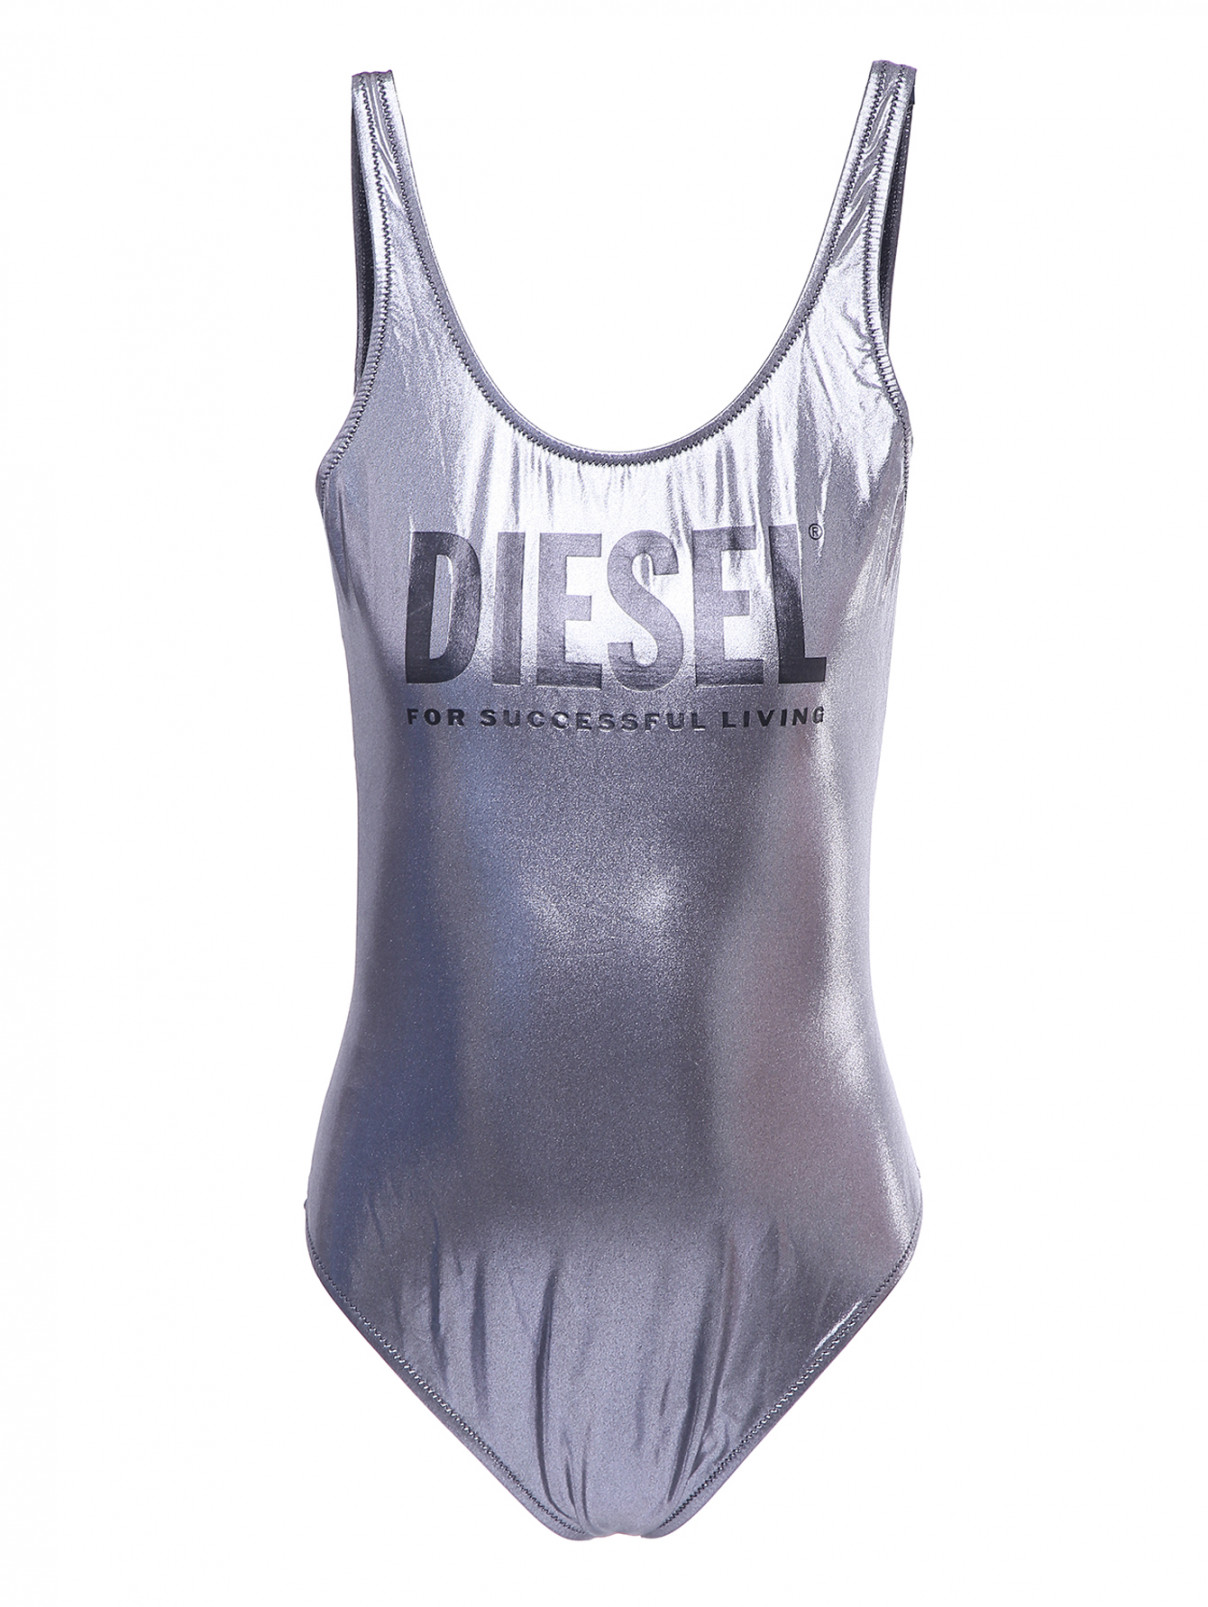 Слитный купальник с принтом Diesel  –  Общий вид  – Цвет:  Серый